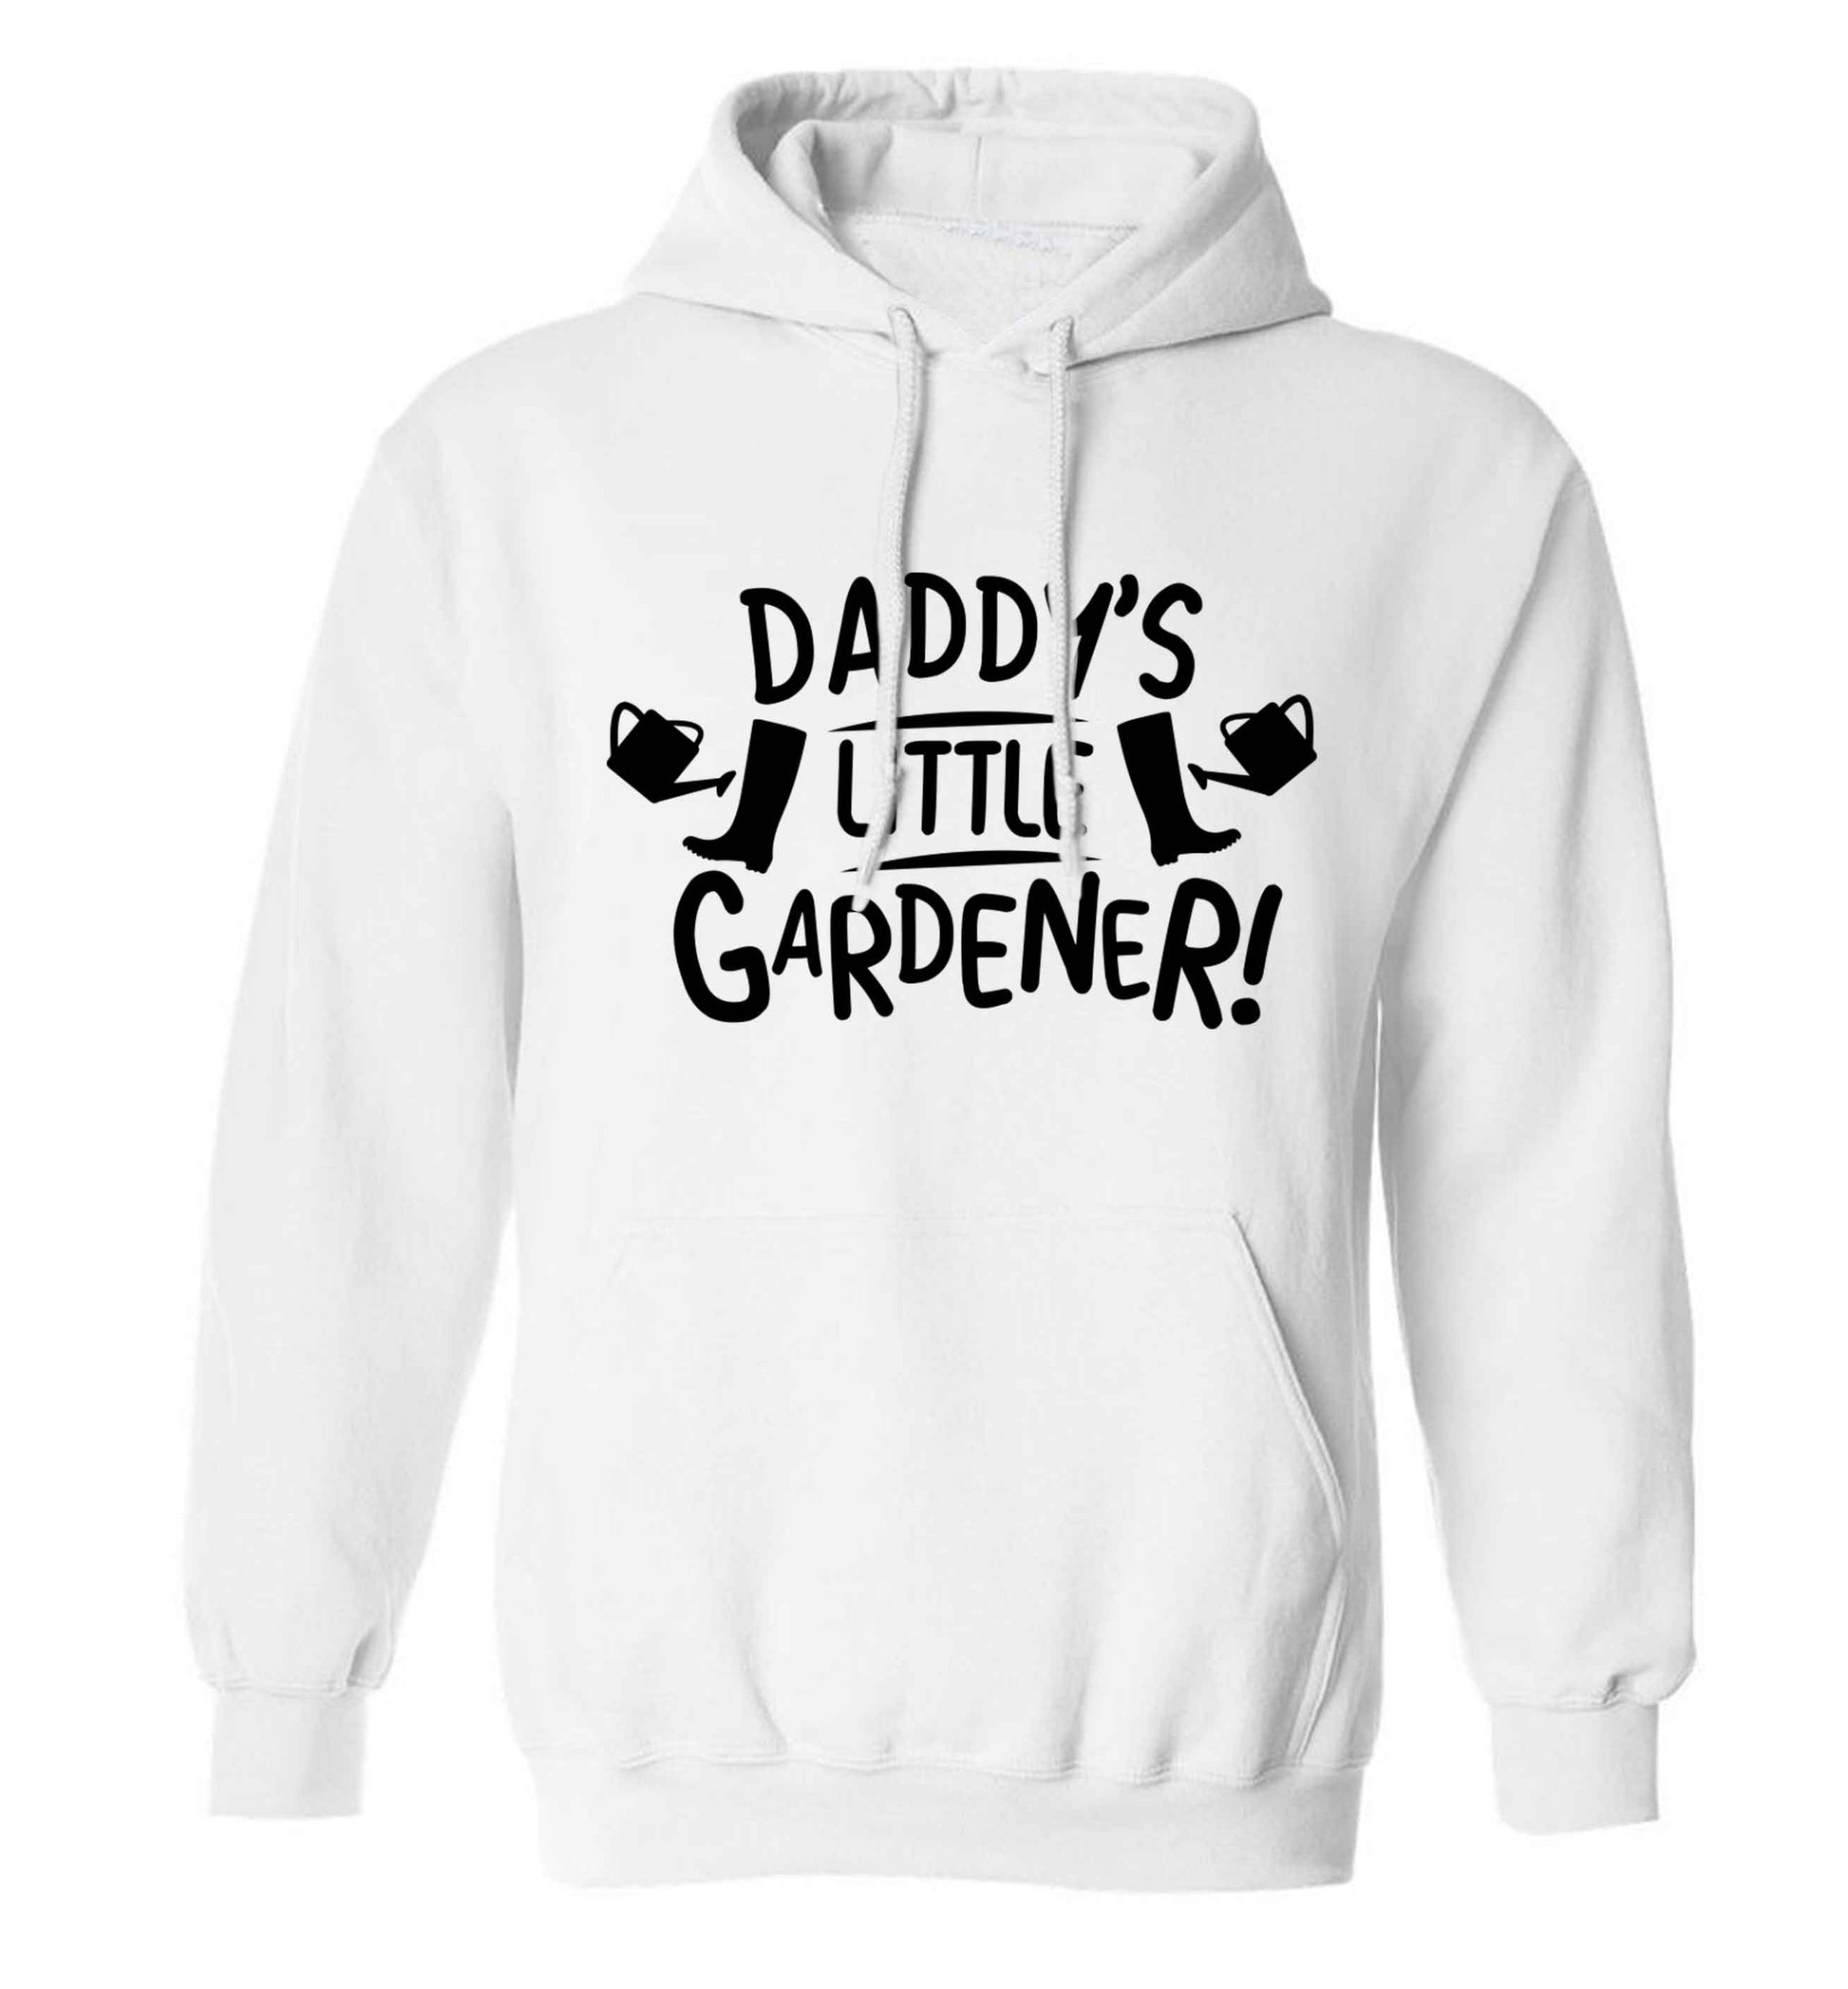 Daddy's little gardener adults unisex white hoodie 2XL